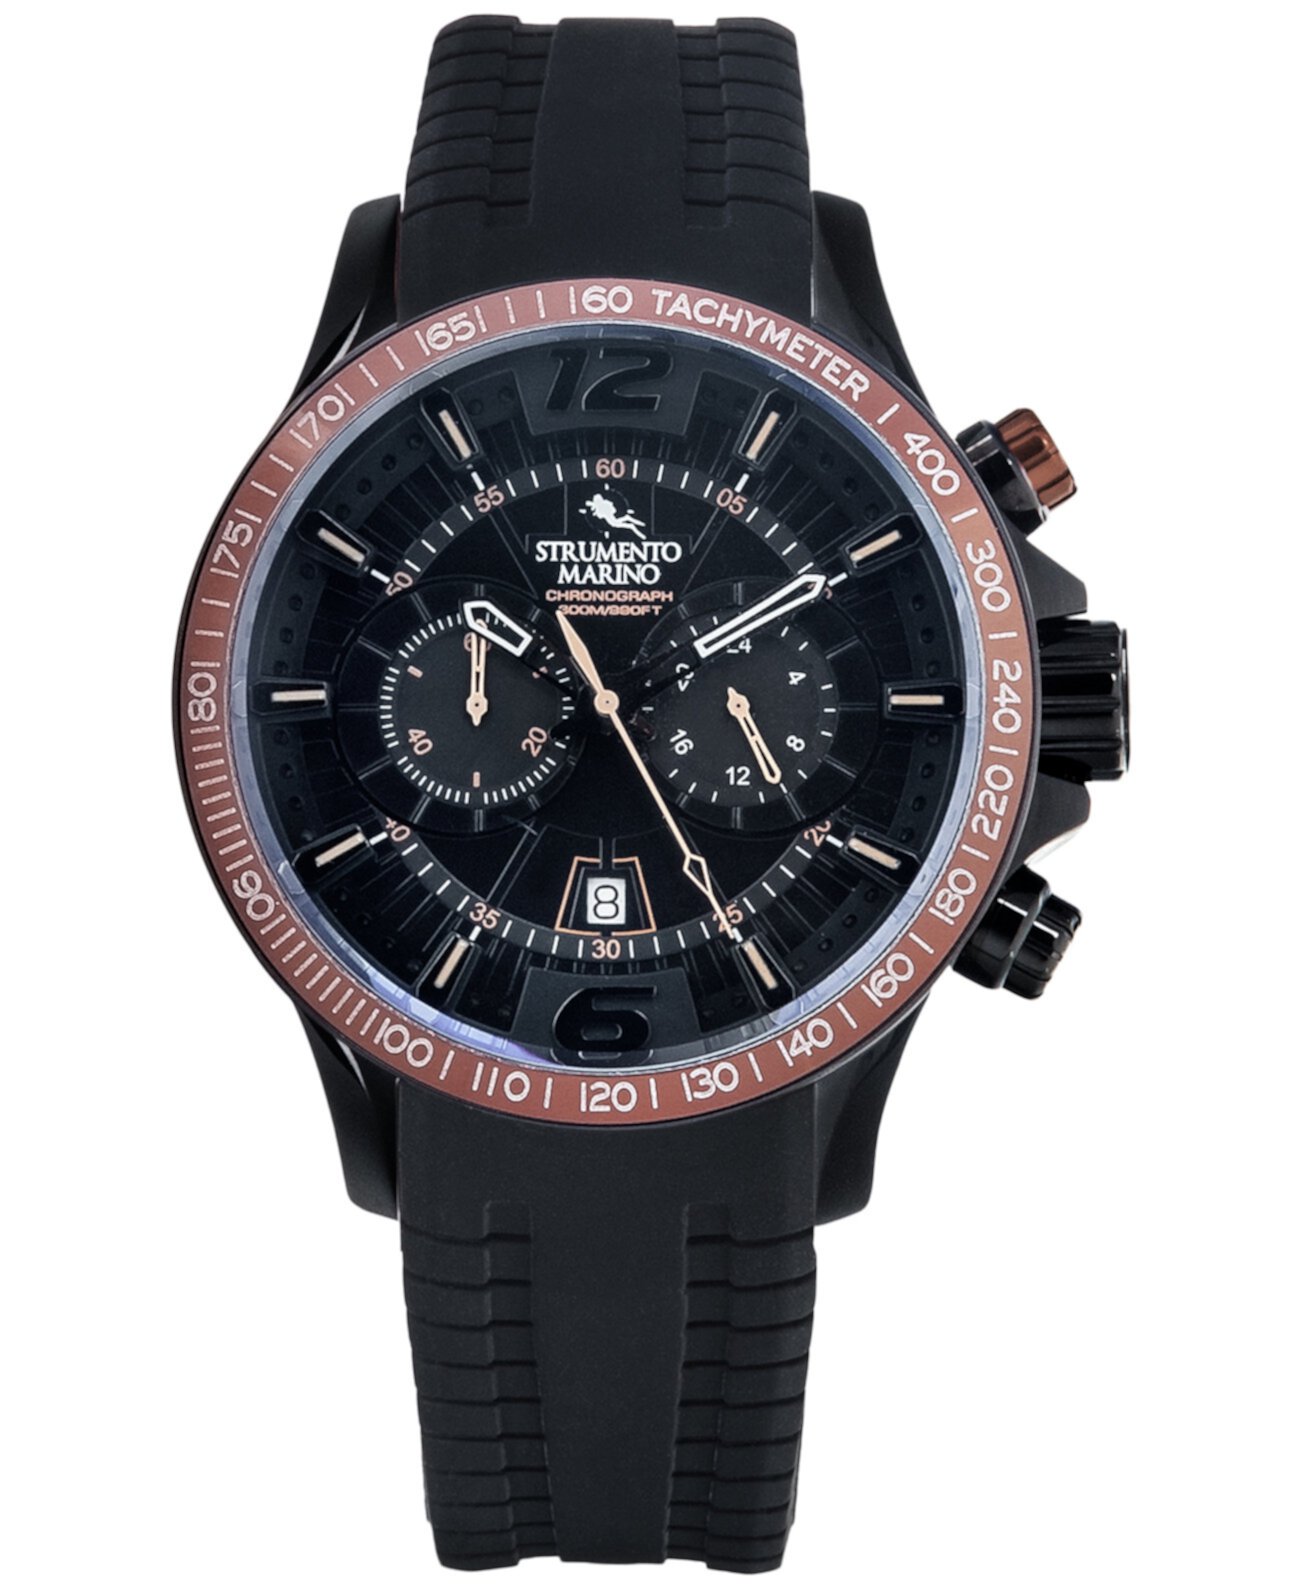 Мужские часы с хронографом Hurricane с черным силиконовым ремешком 46 мм Strumento Marino